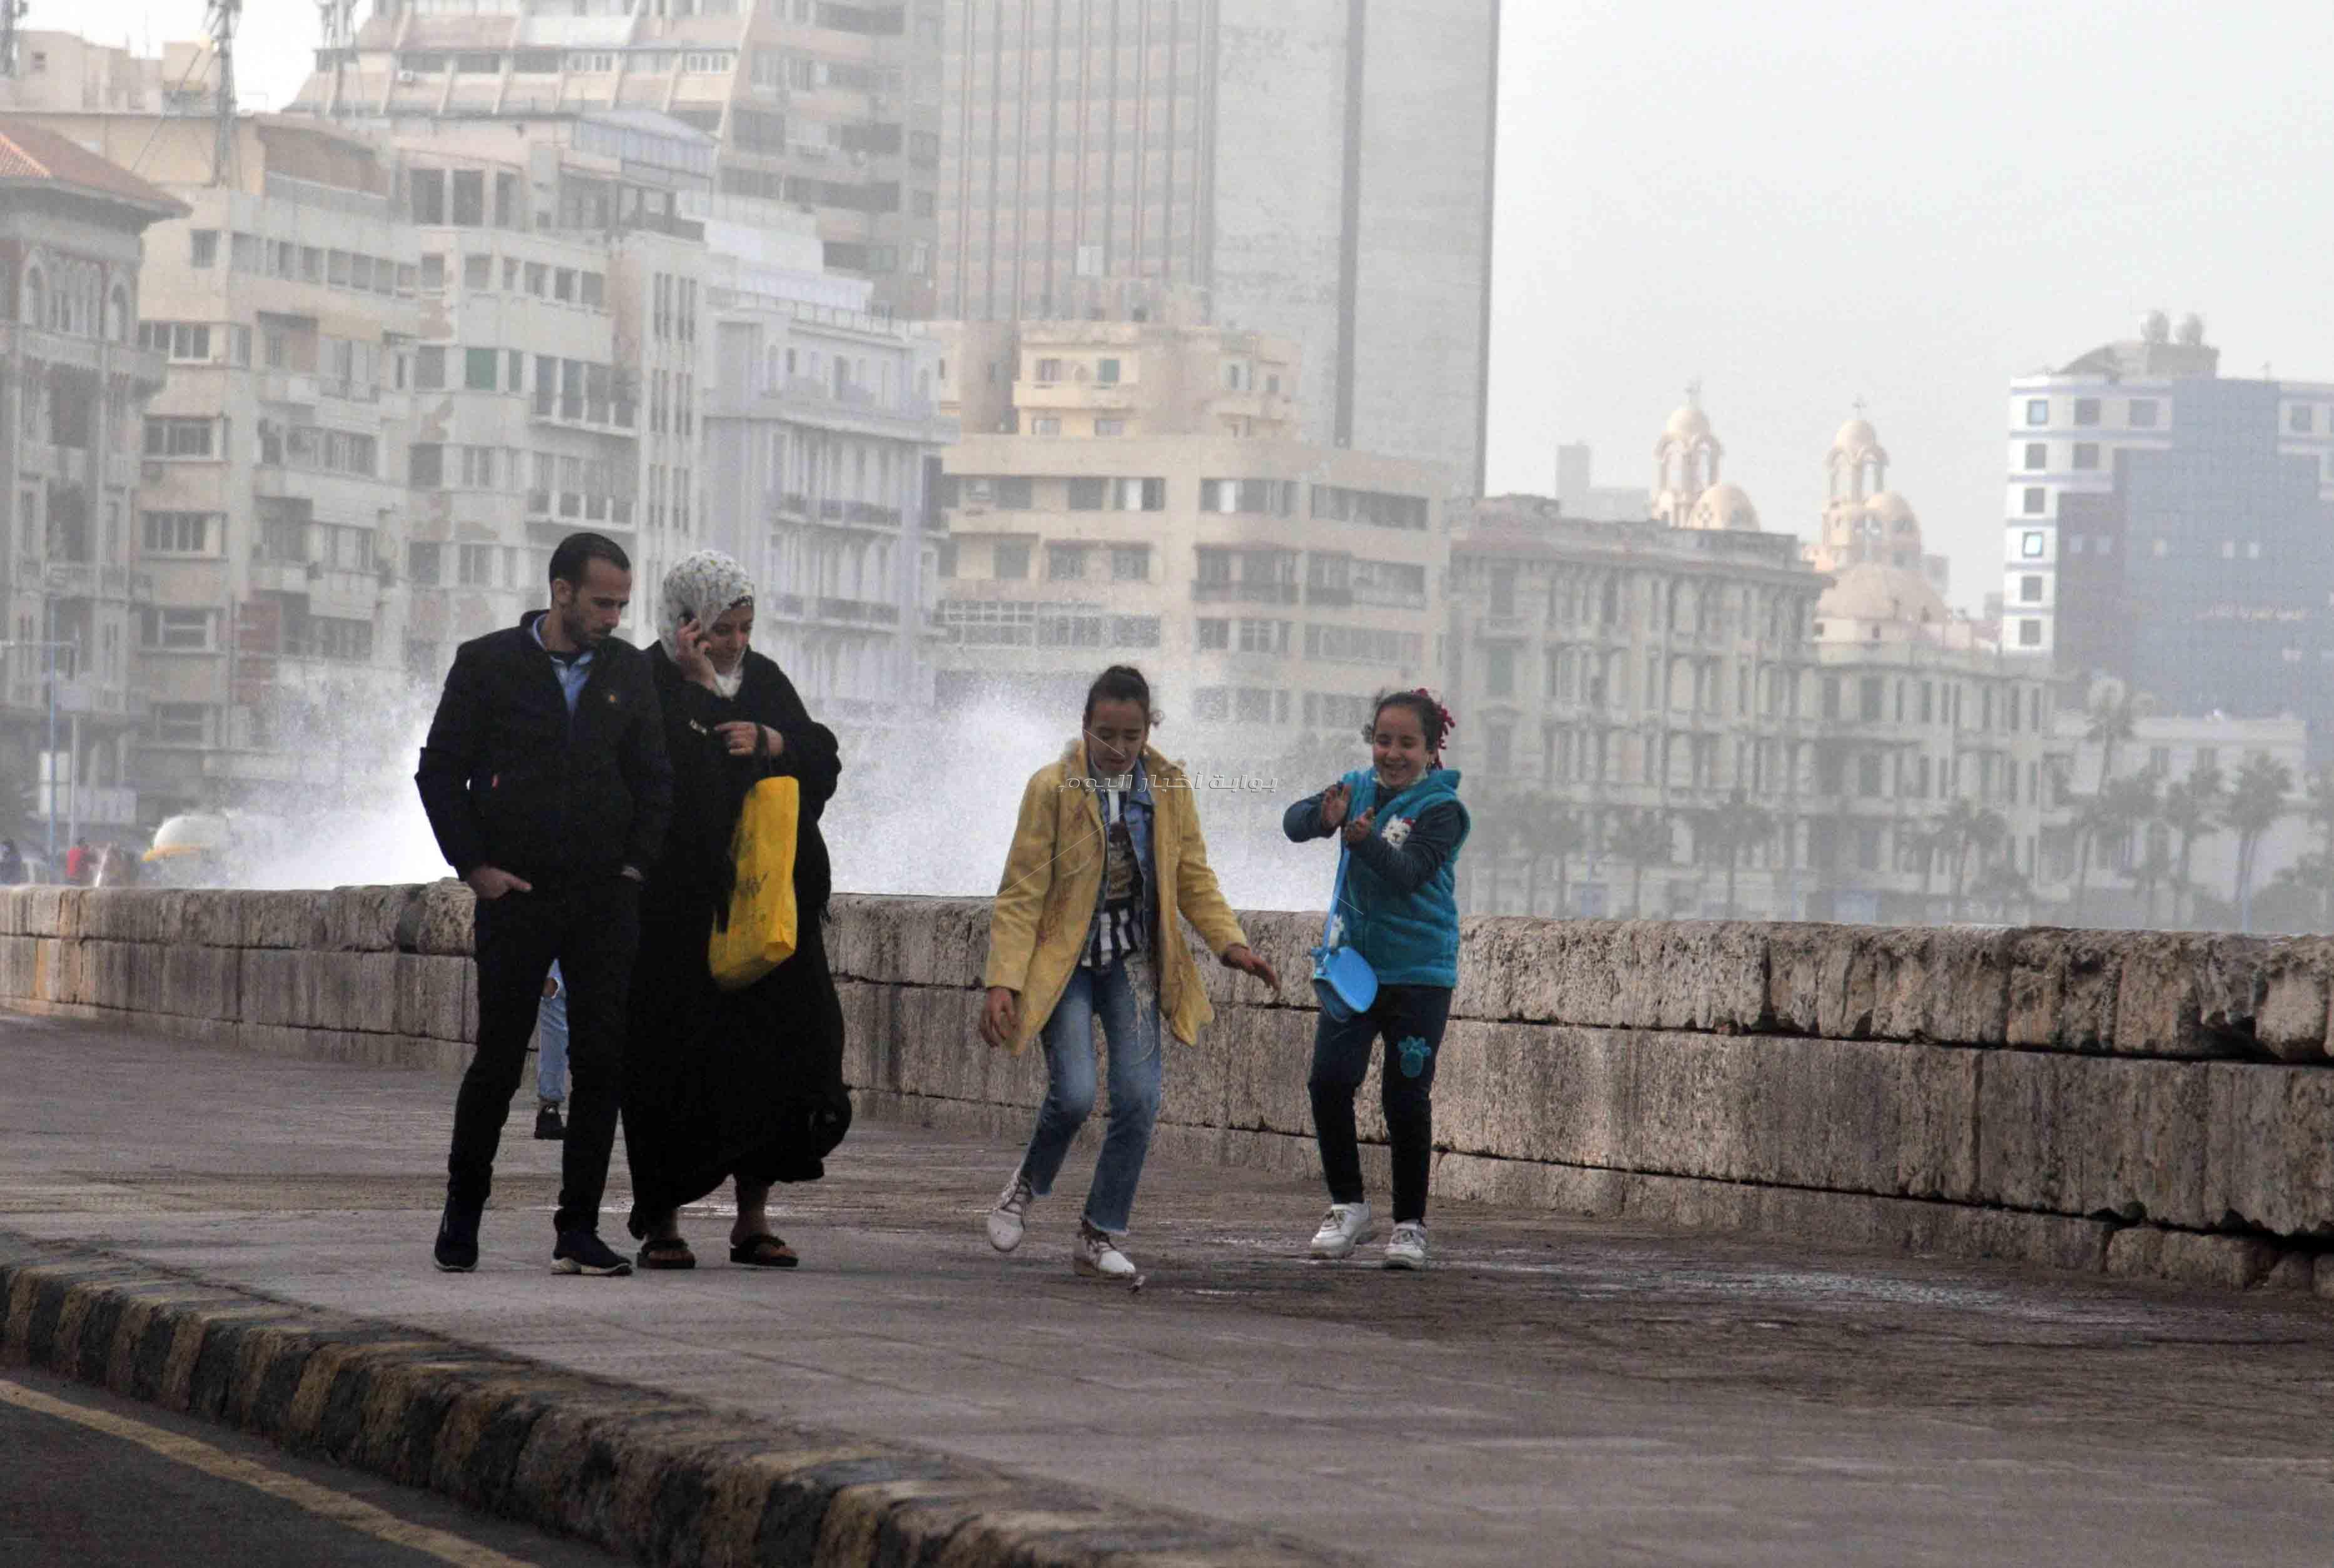 أمطار وعواصف تجتاح سواحل الإسكندرية| فيديو وصور